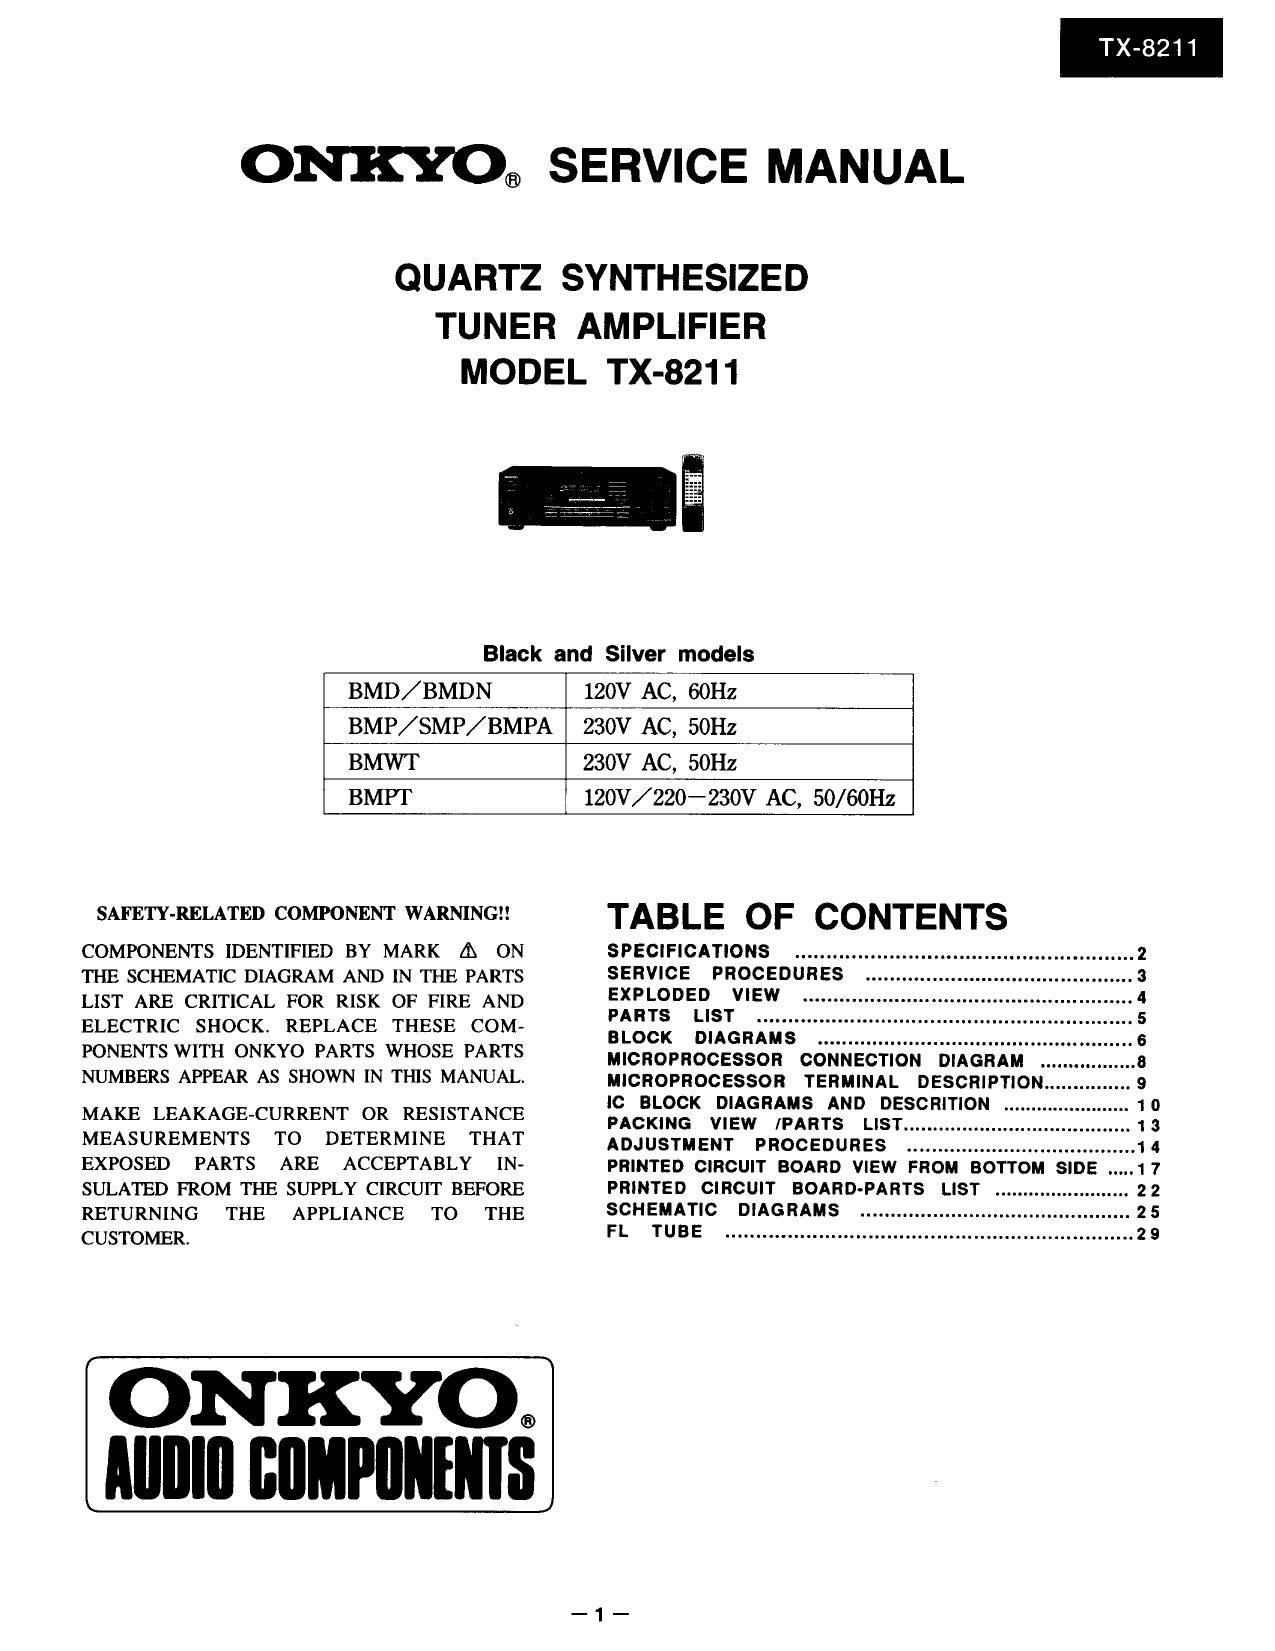 Onkyo TX 8211 Service Manual